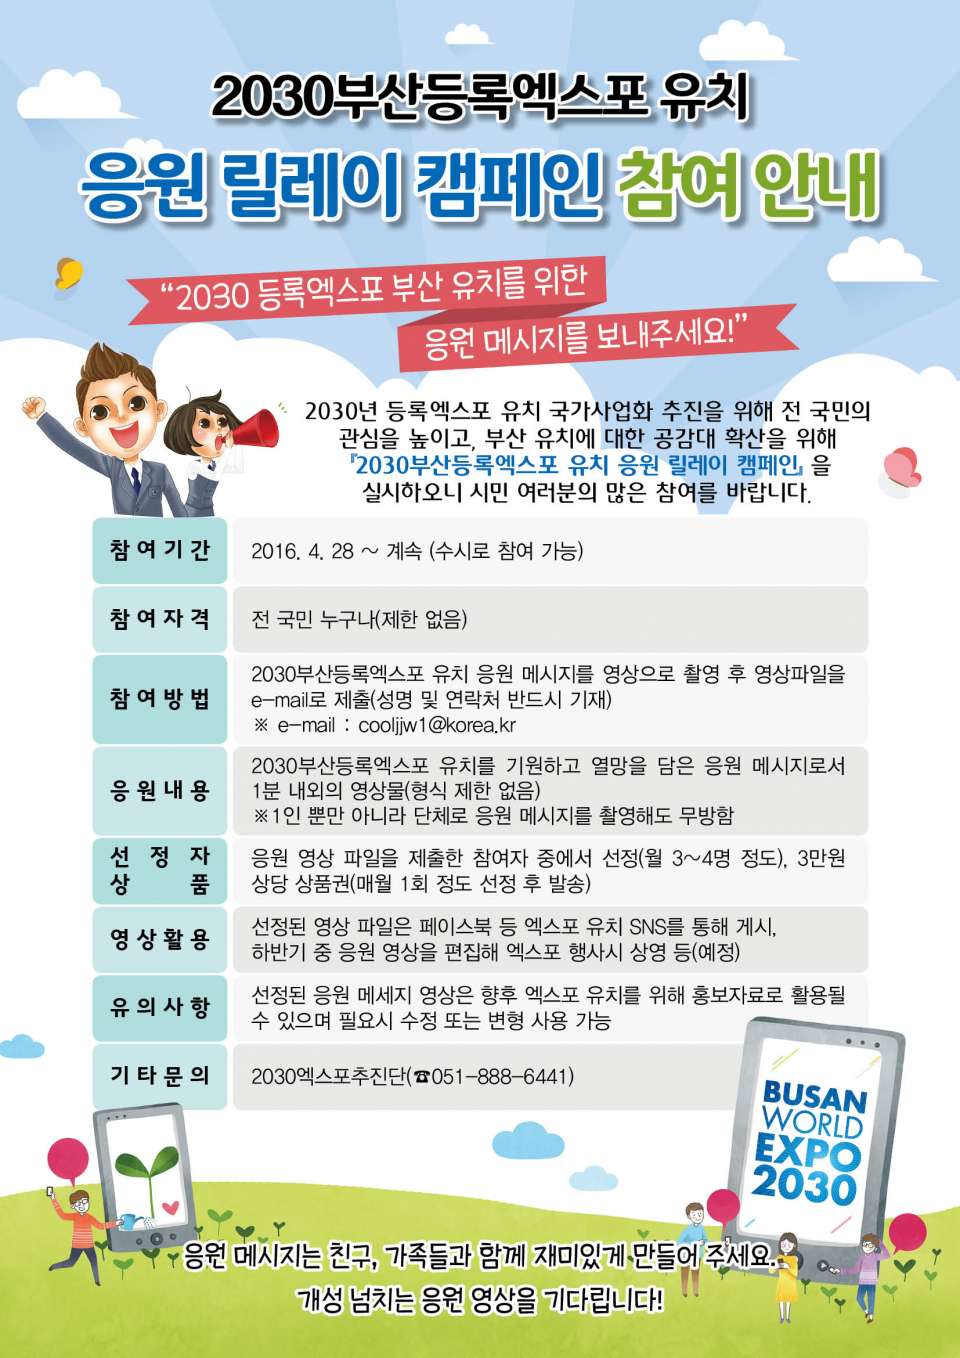 2030부산등록엑스포 유치 응원 릴레이 캠페인 홍보